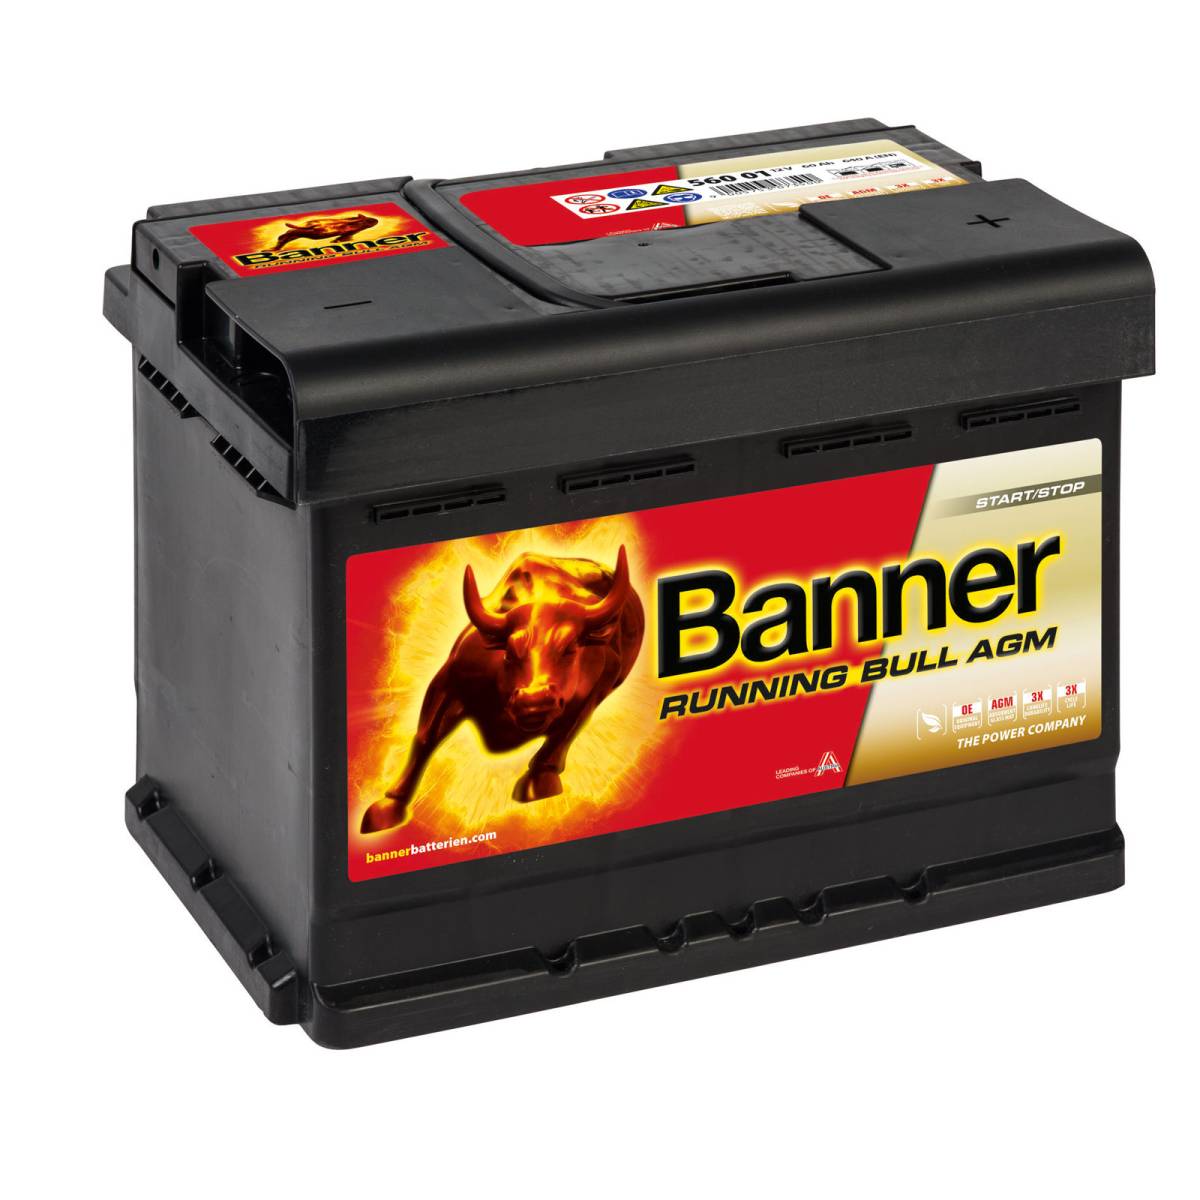 Banner 56001 AGM Running Bull 12V 60Ah 640A batterie auto